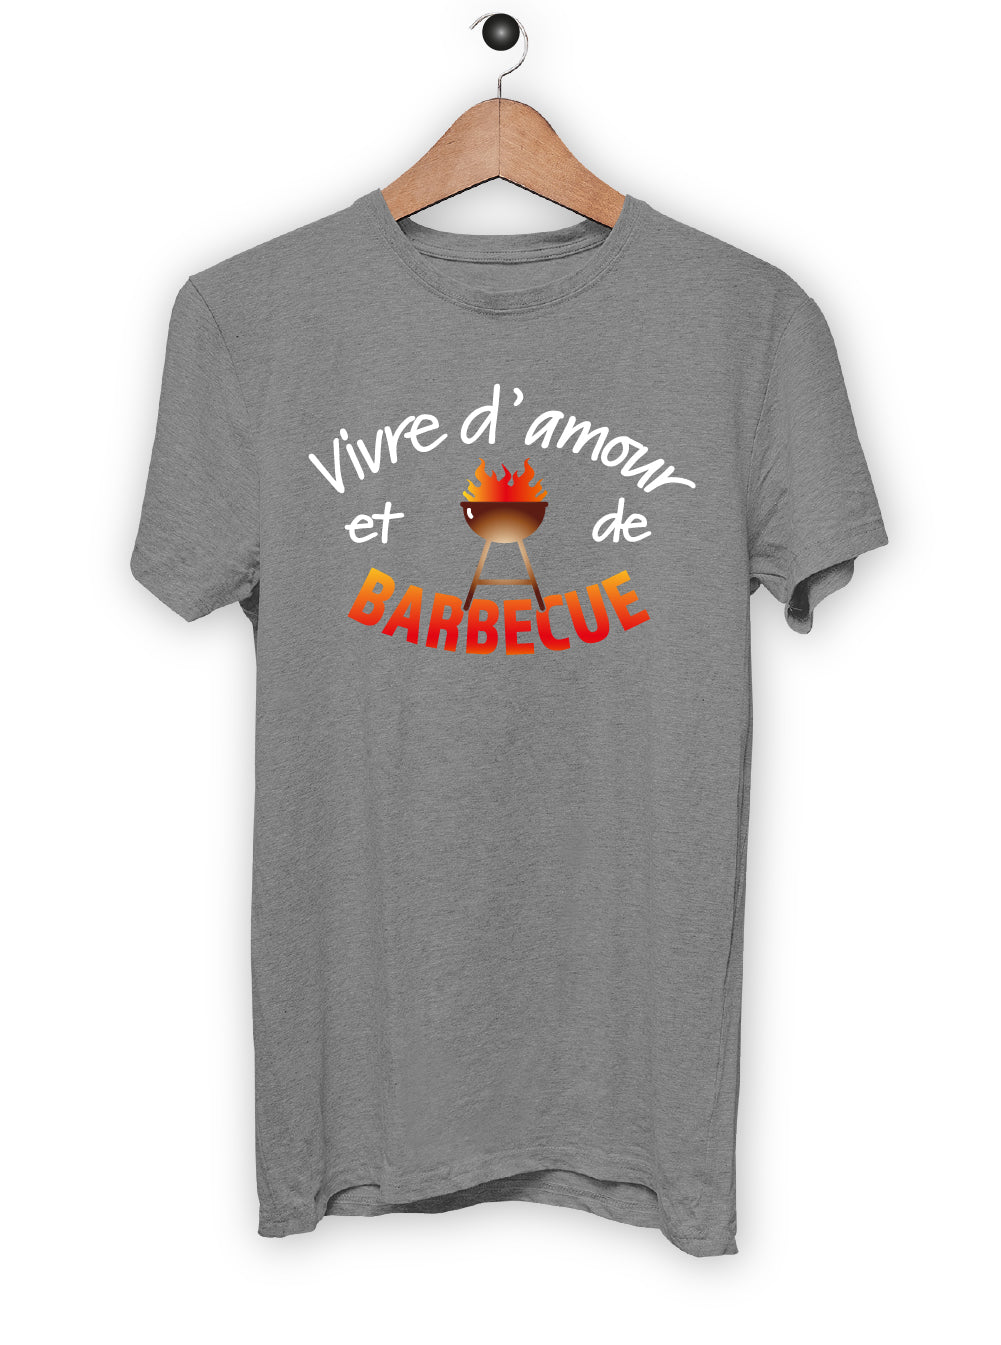 T-Shirt "VIVRE D'AMOUR ET DE BARBECUE"